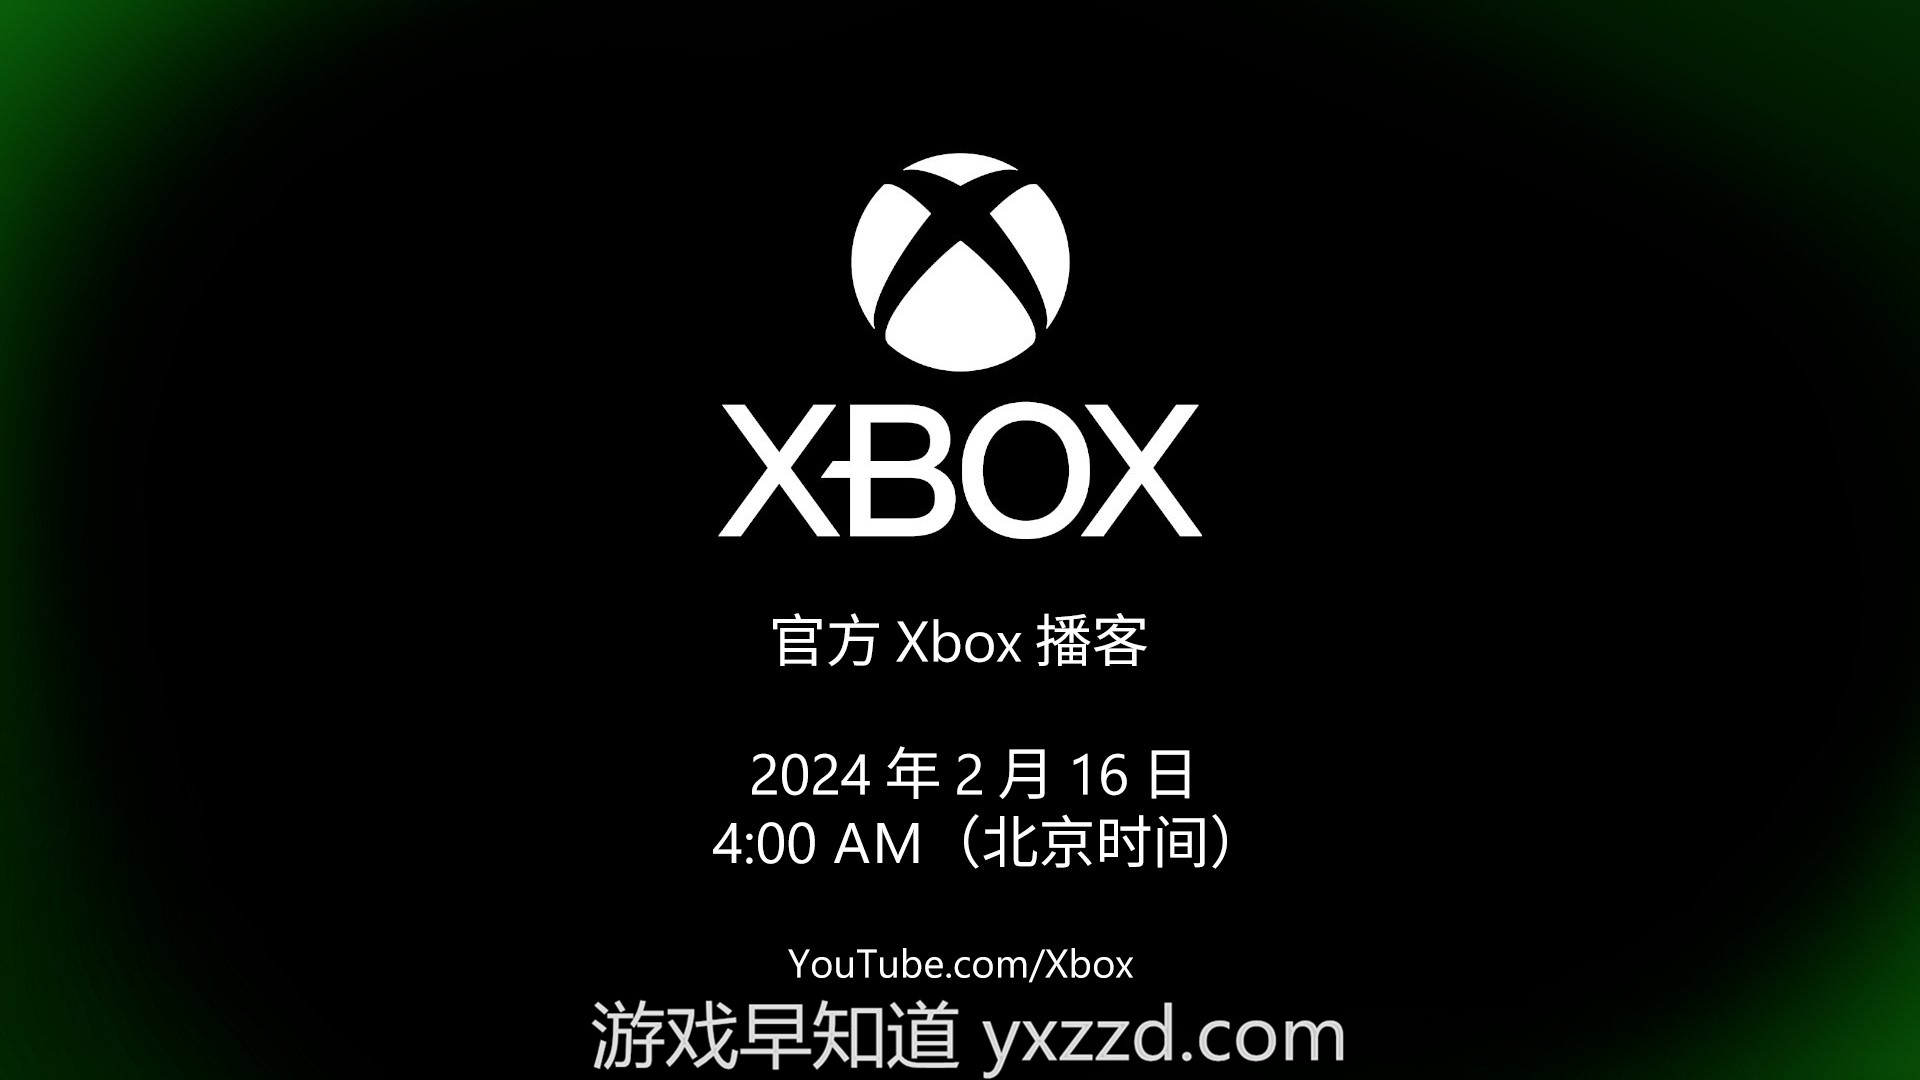 新一期Xbox播客特别节目北京时间2月16日举行 说明Xbox业务更新规划